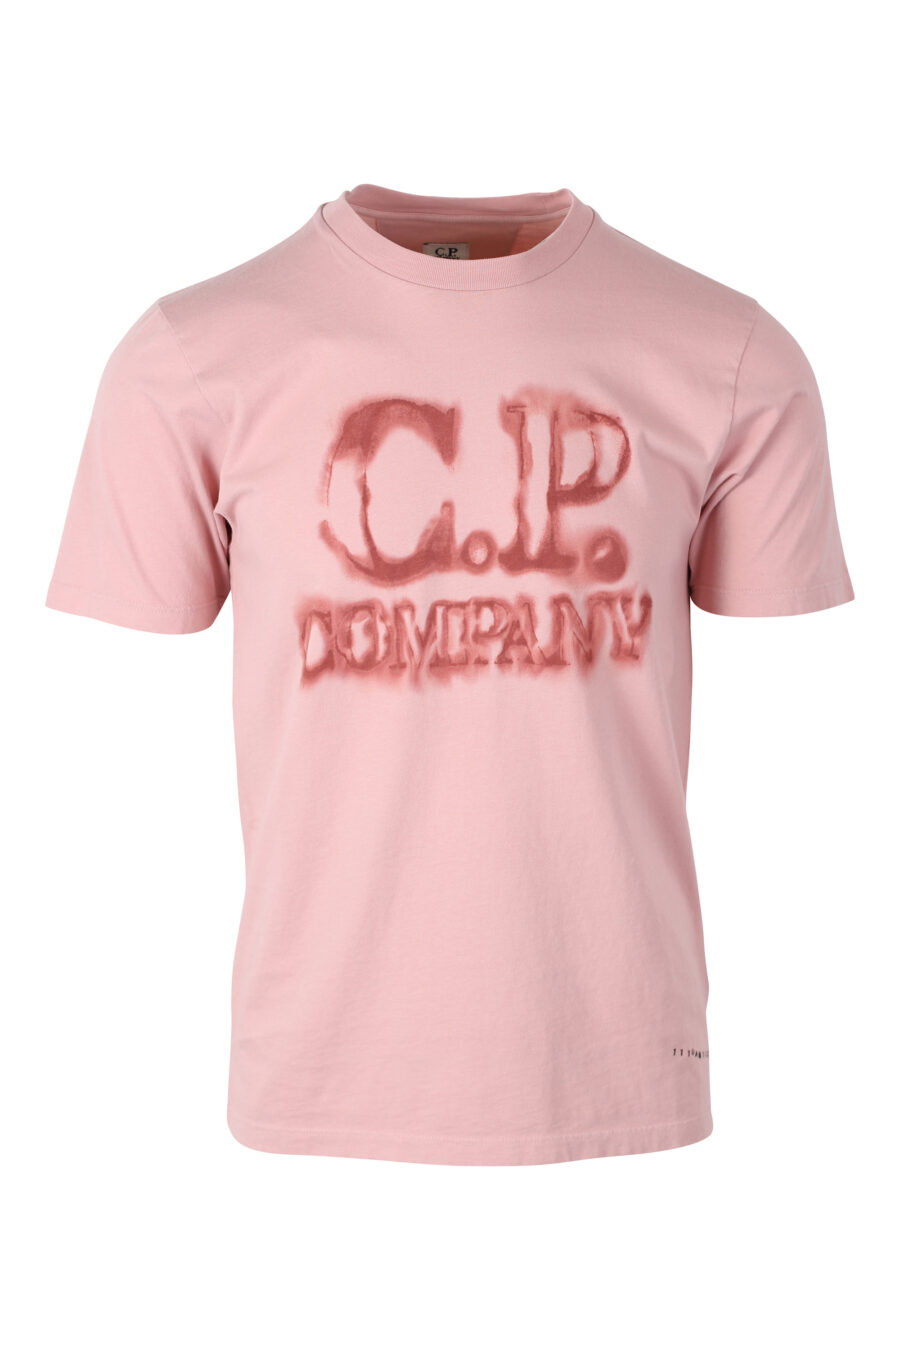 T-shirt cor-de-rosa com maxilogo "spray" - IMG 2401